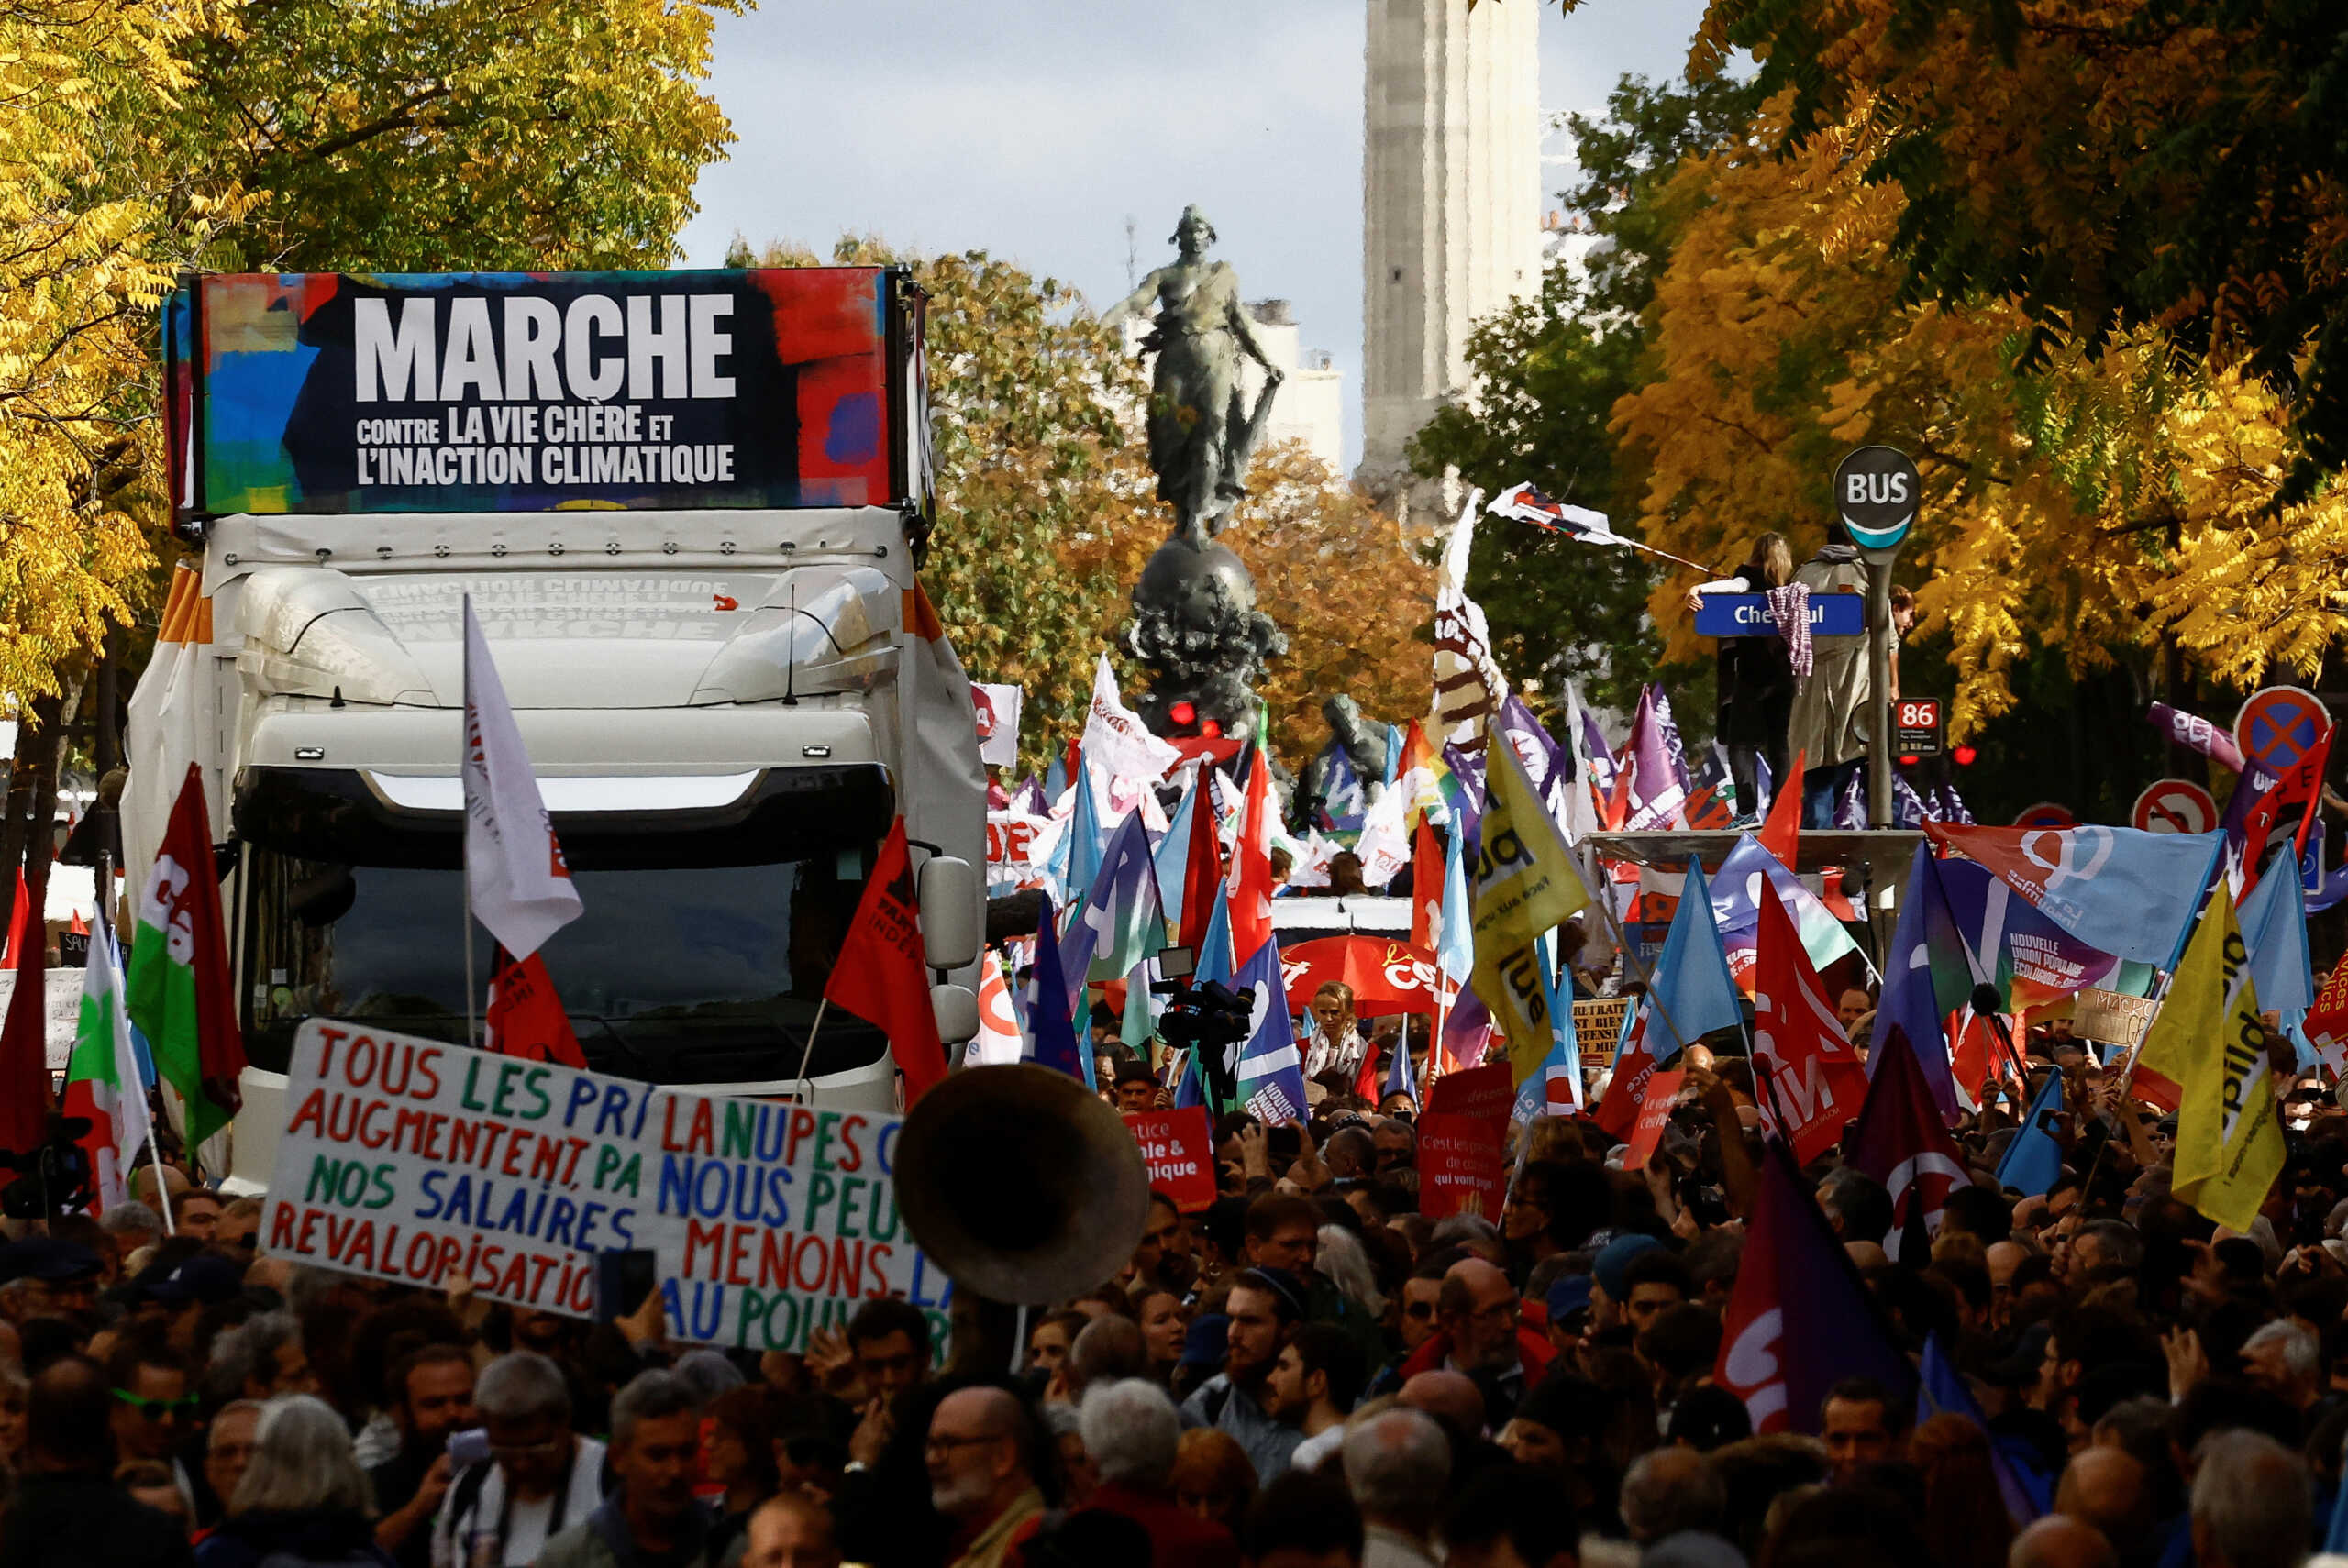 Γαλλία: Διαδήλωση στο Παρίσι για την άνοδο του κόστους ζωής και τον υψηλό πληθωρισμό